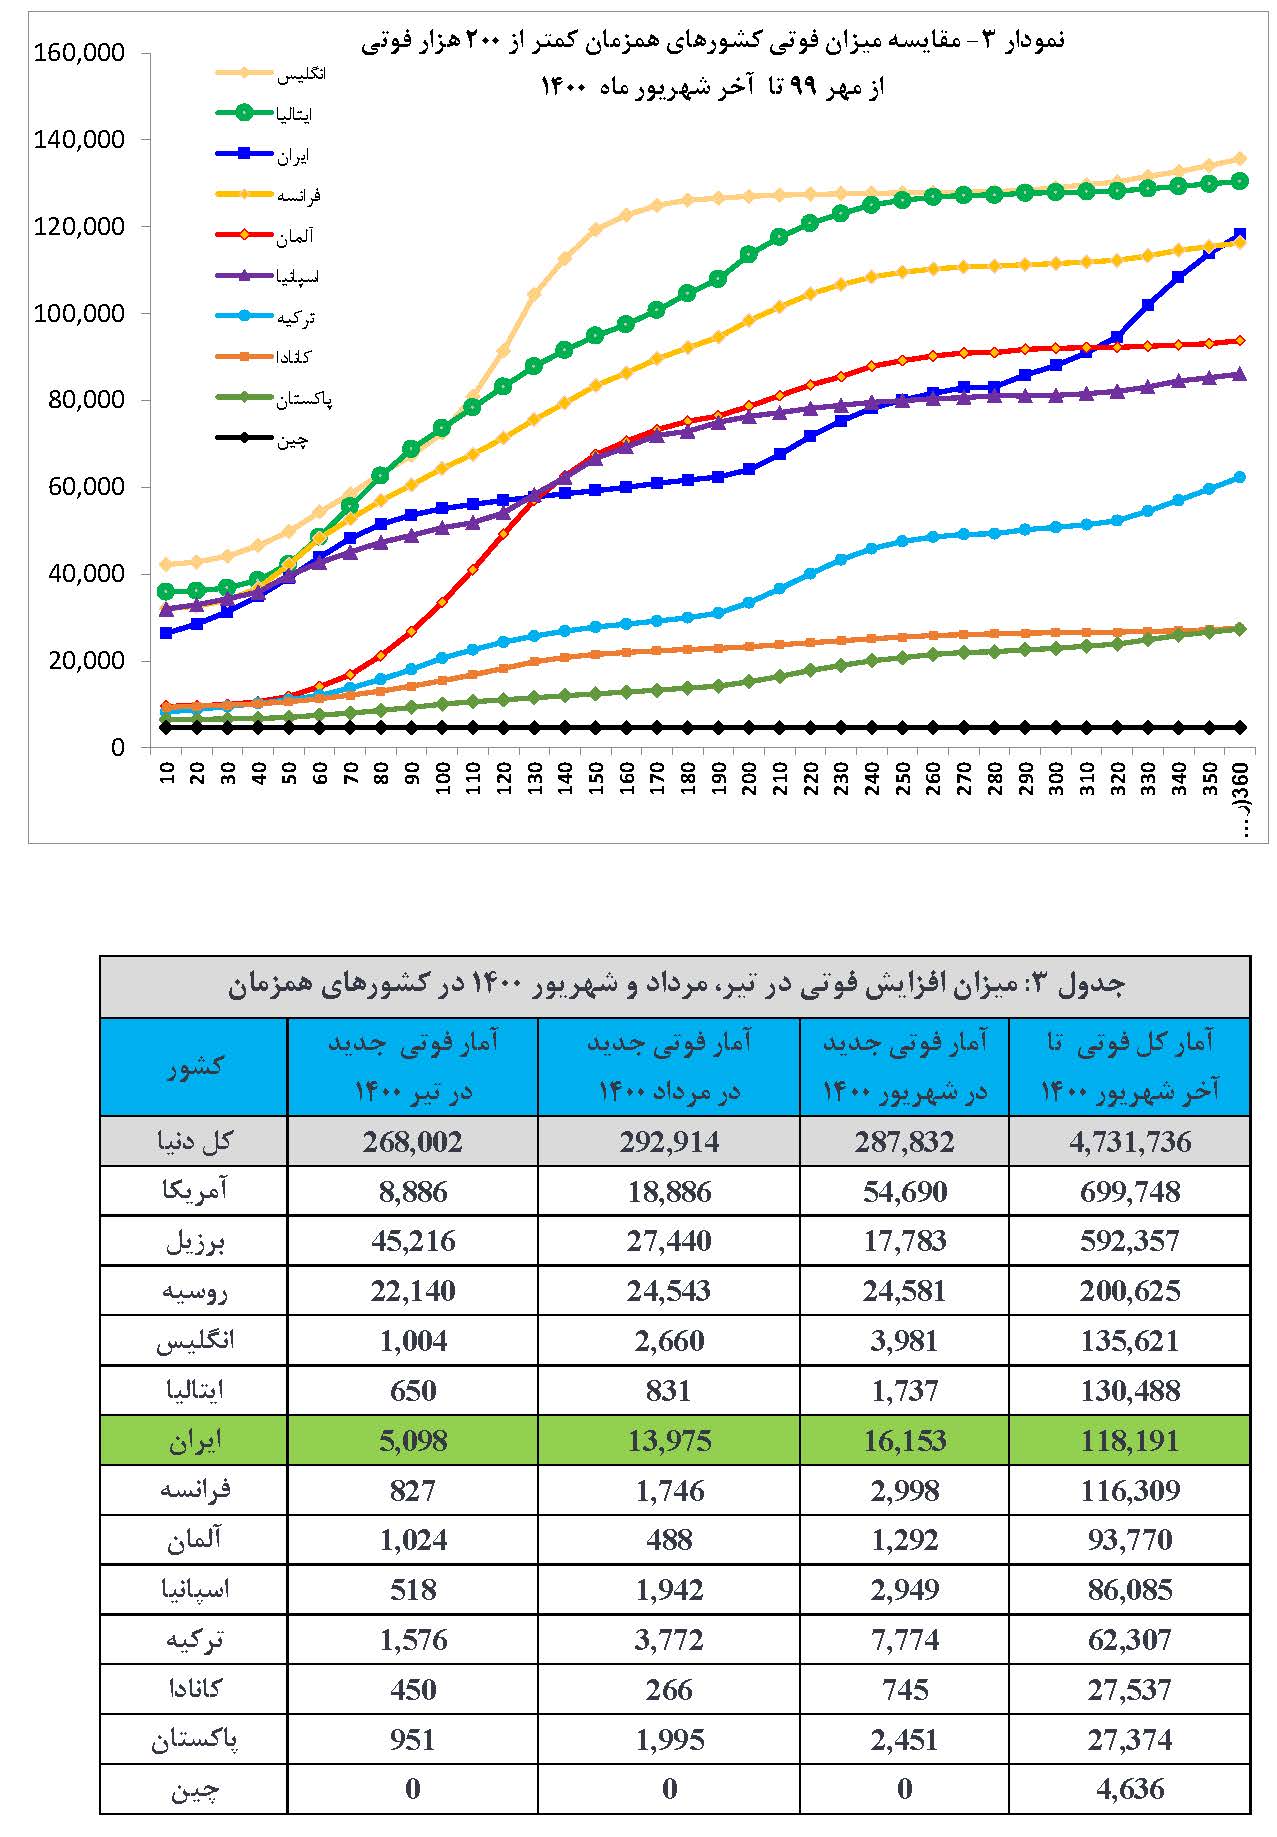 گزارش تحلیلی سامانه نماگر کووید-19 ISC در دنیا و ایران-شهریور 1400